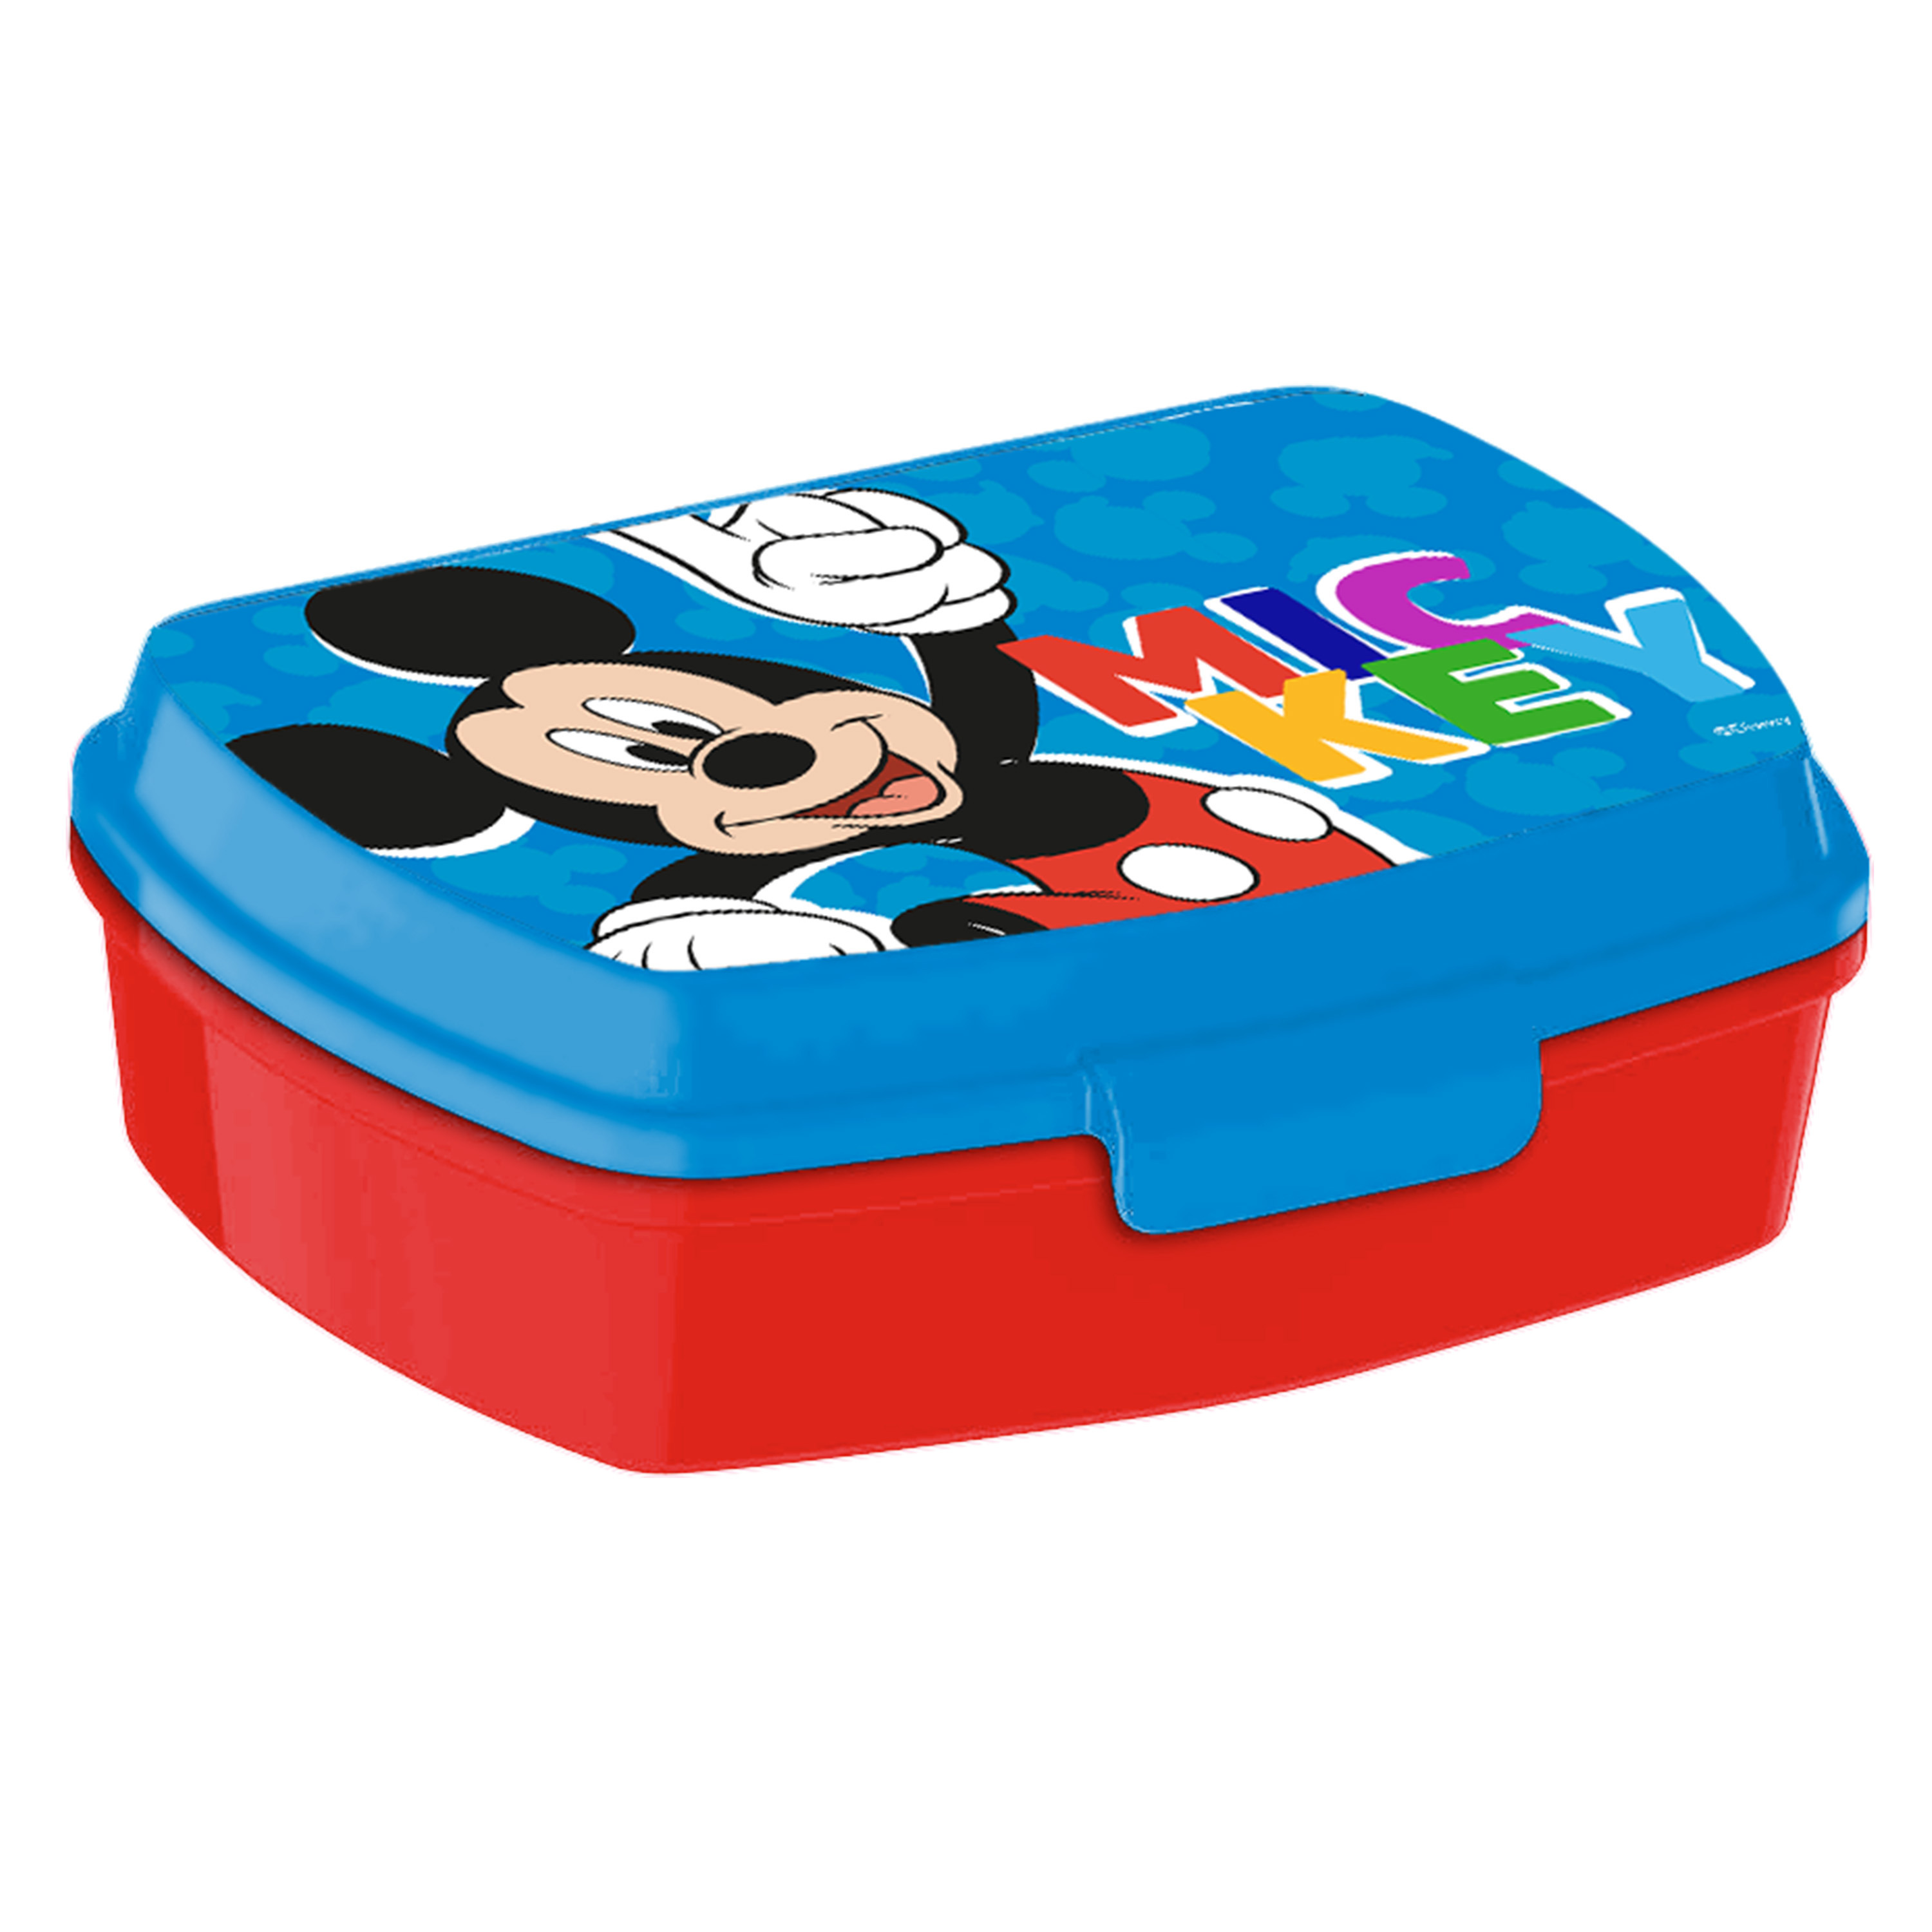 Disney Mickey Mouse broodtrommel-lunchbox voor kinderen rood-blauw kunststof 20 x 10 cm